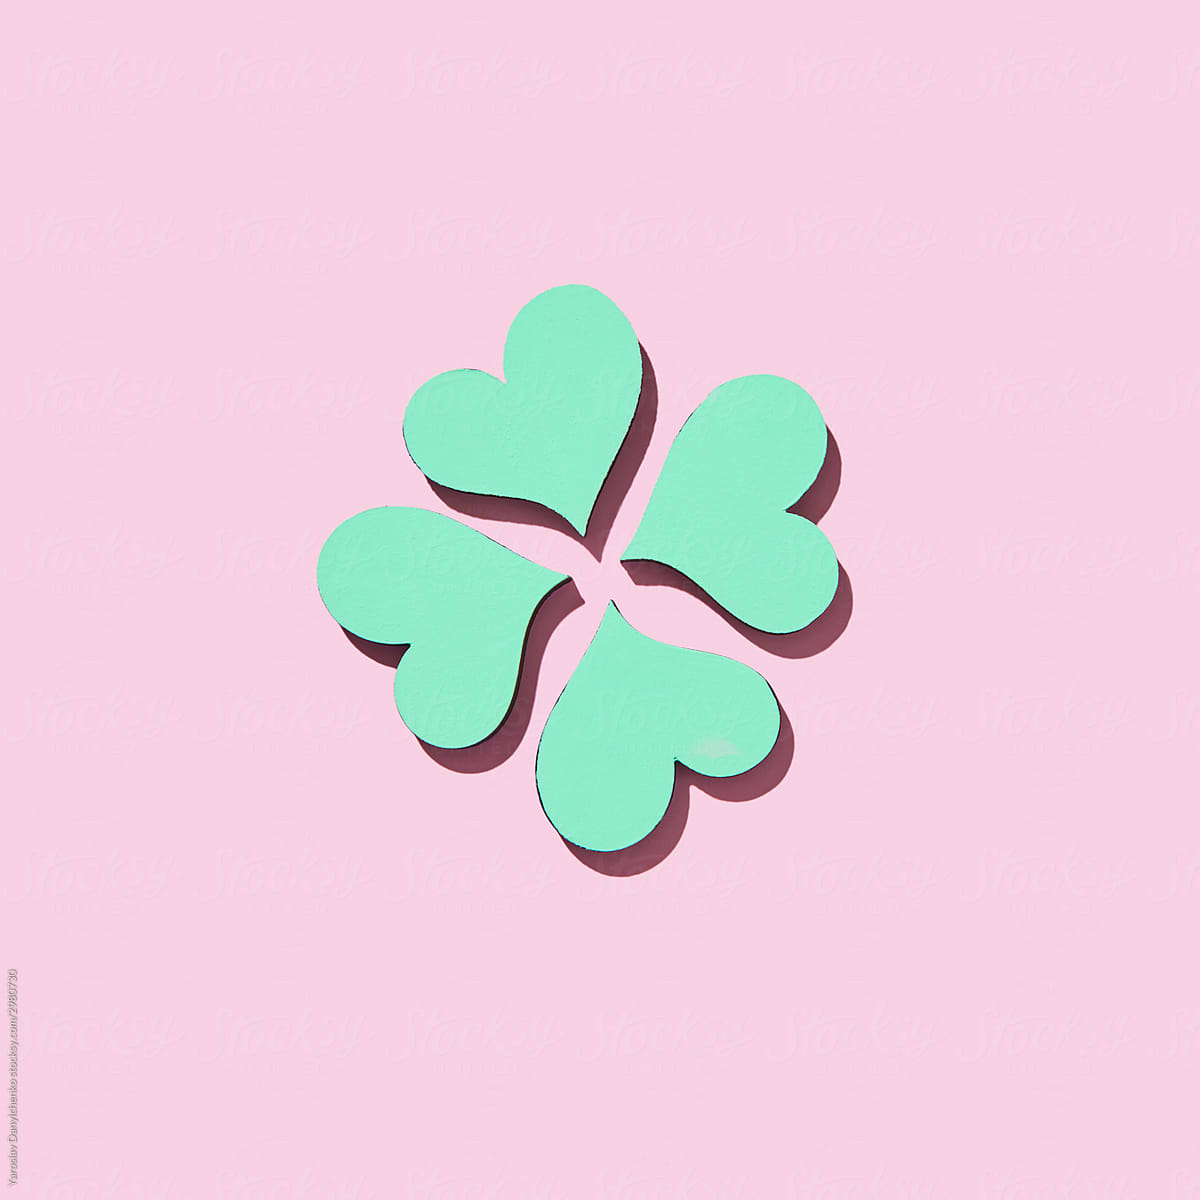 Handmade paper green shamrock\'s four petals.